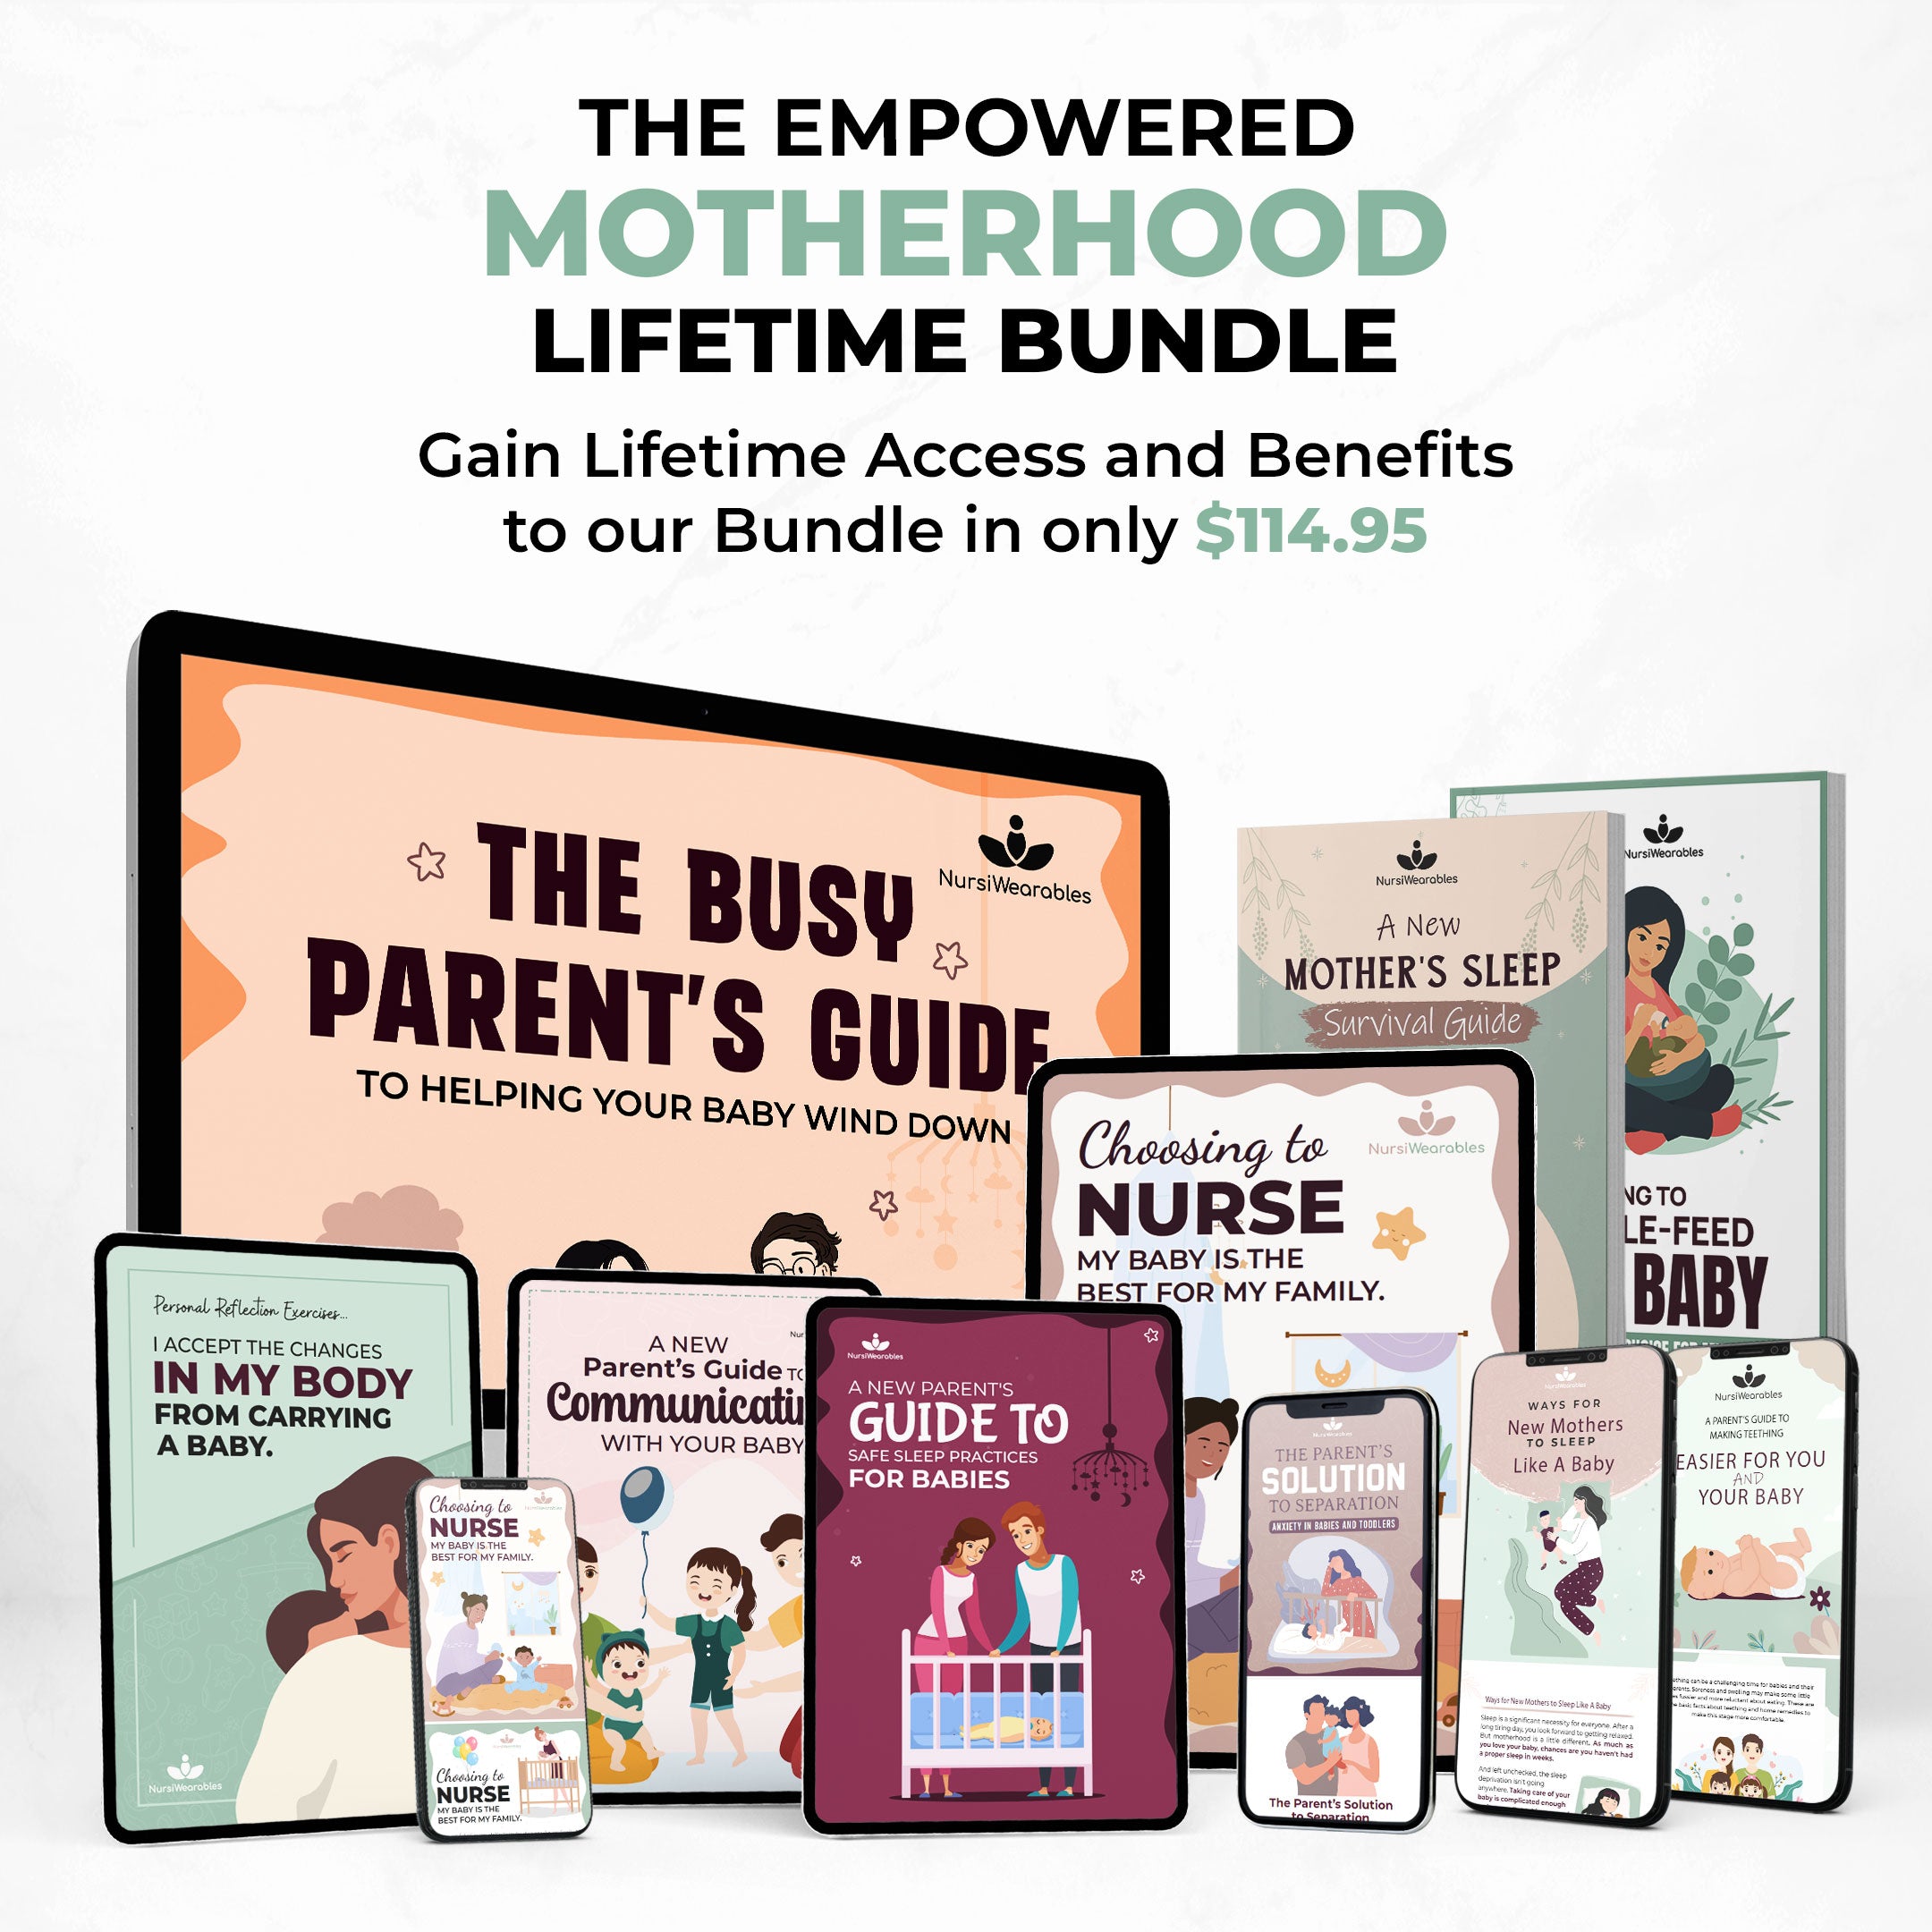 The Empowered Motherhood Lifetime Bundle